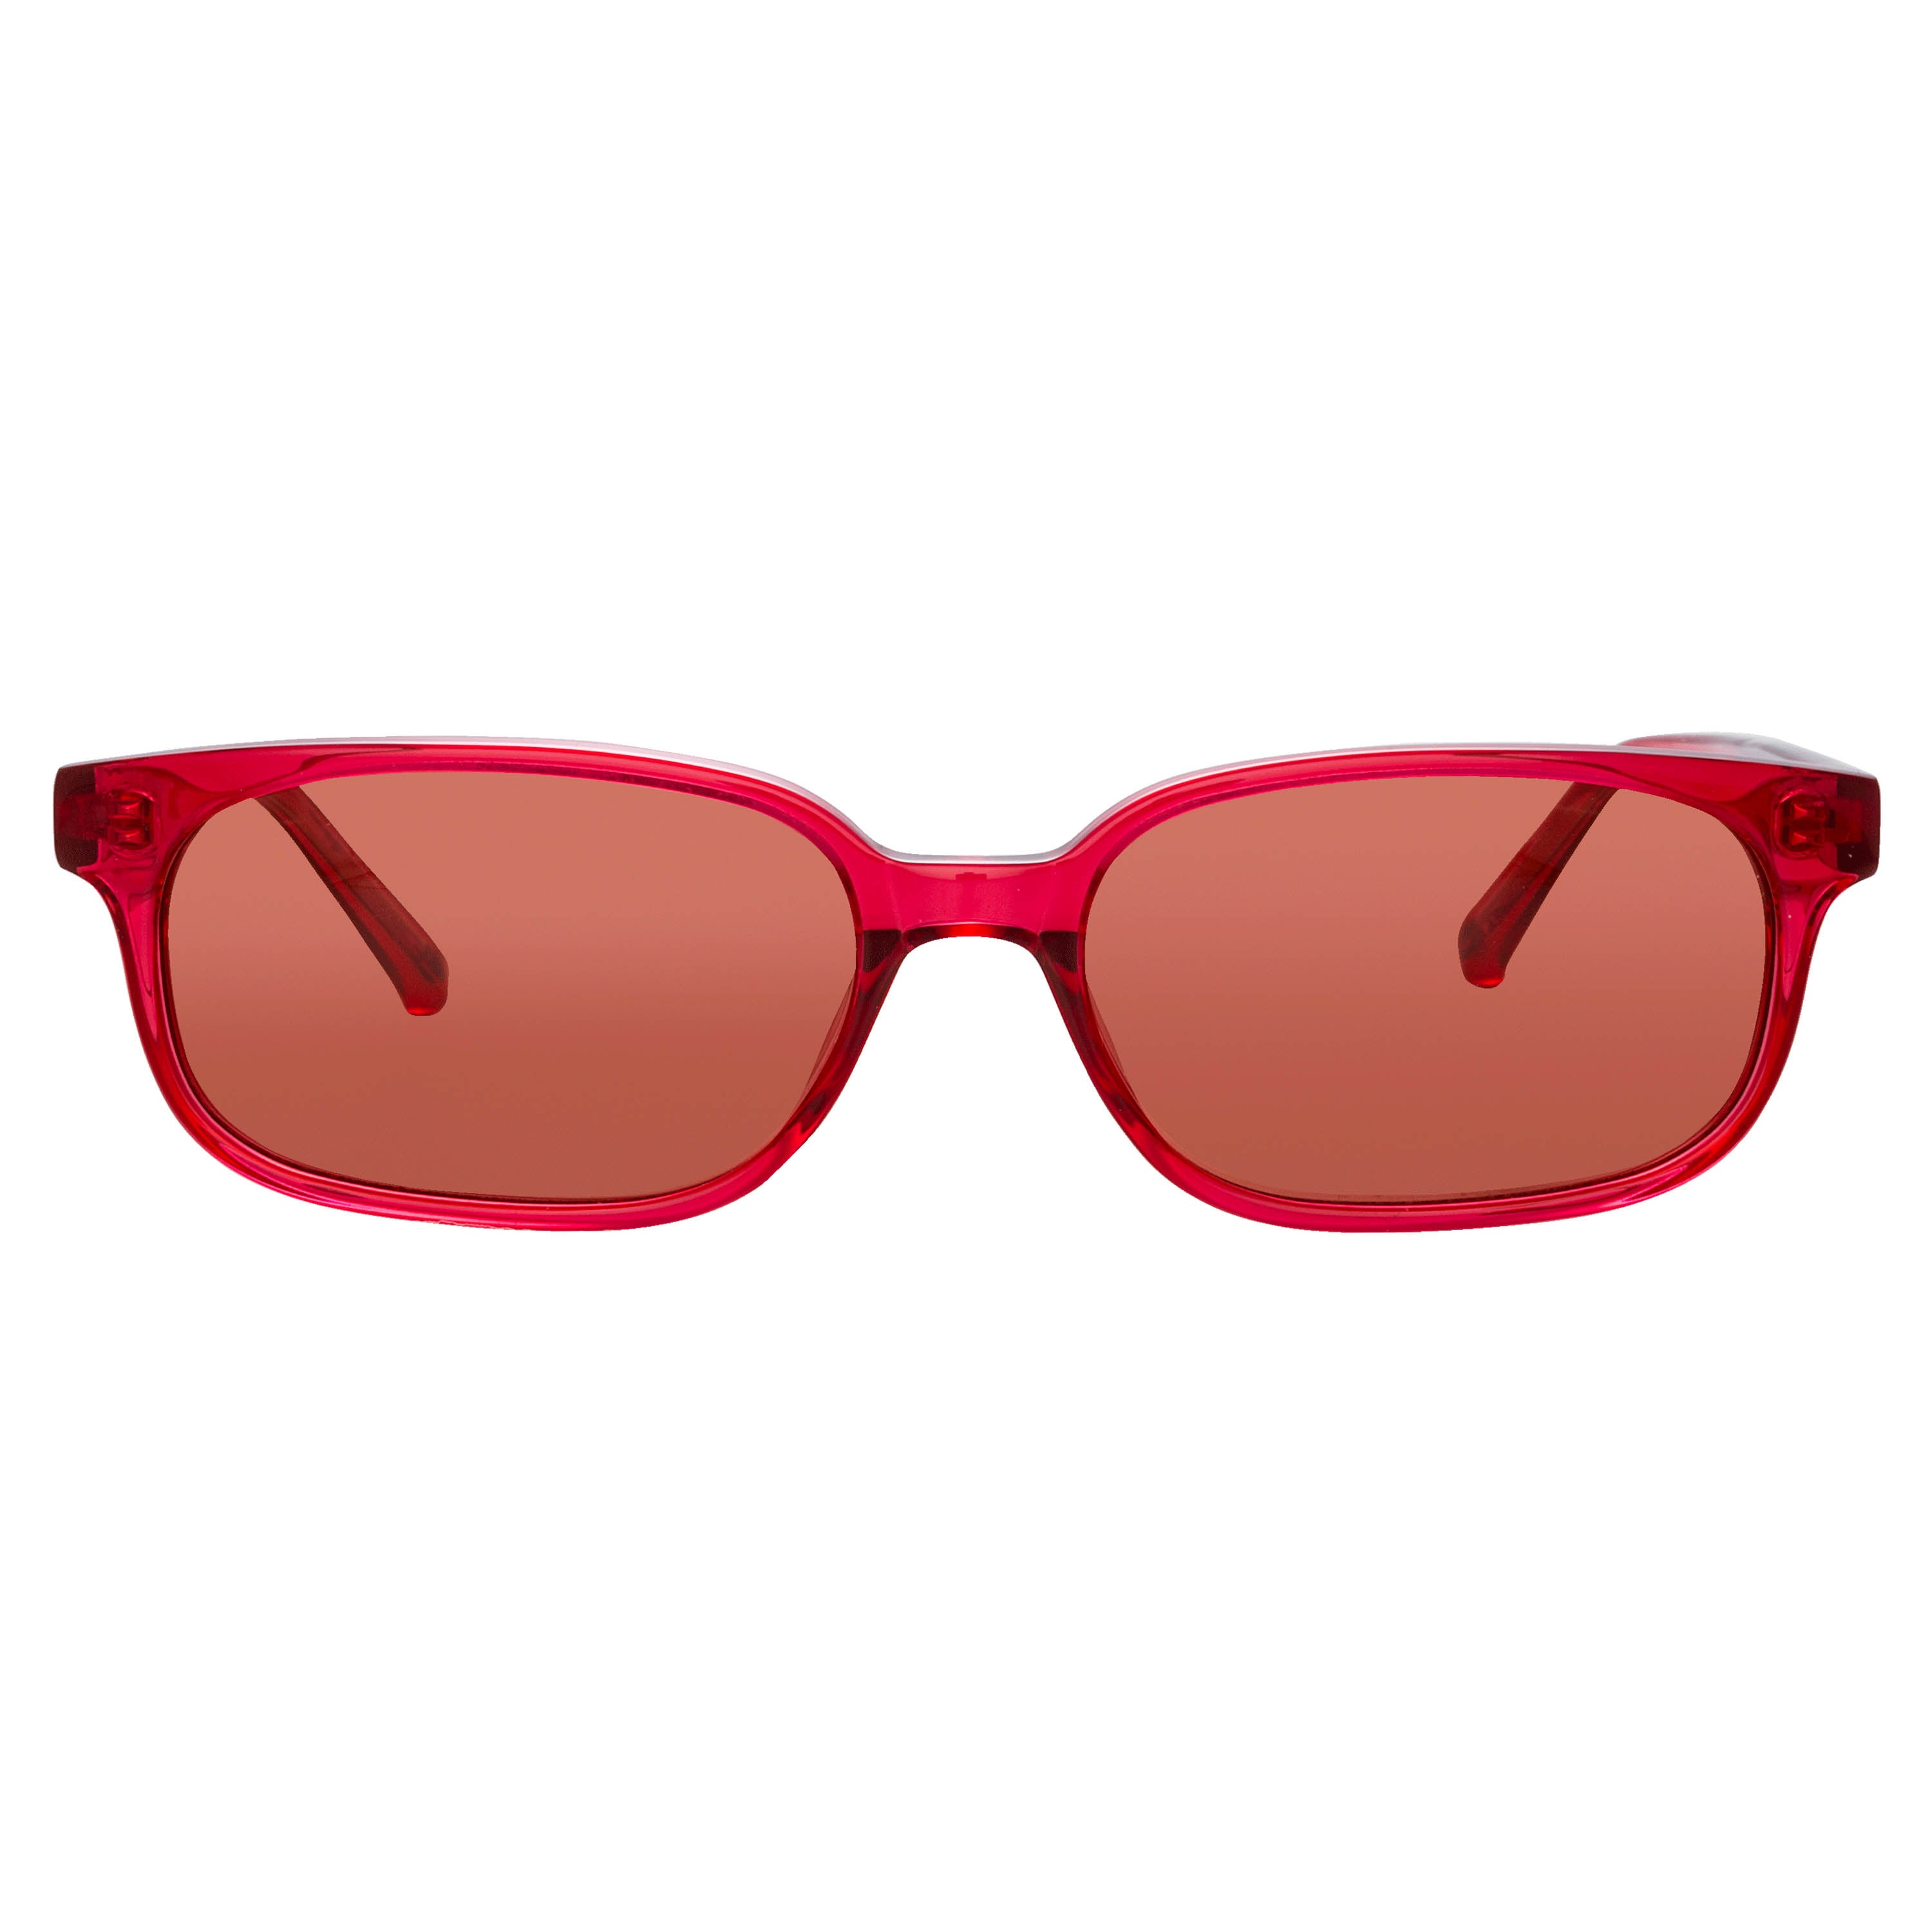 The Attico Gigi Rectangular Sunglasses in Red